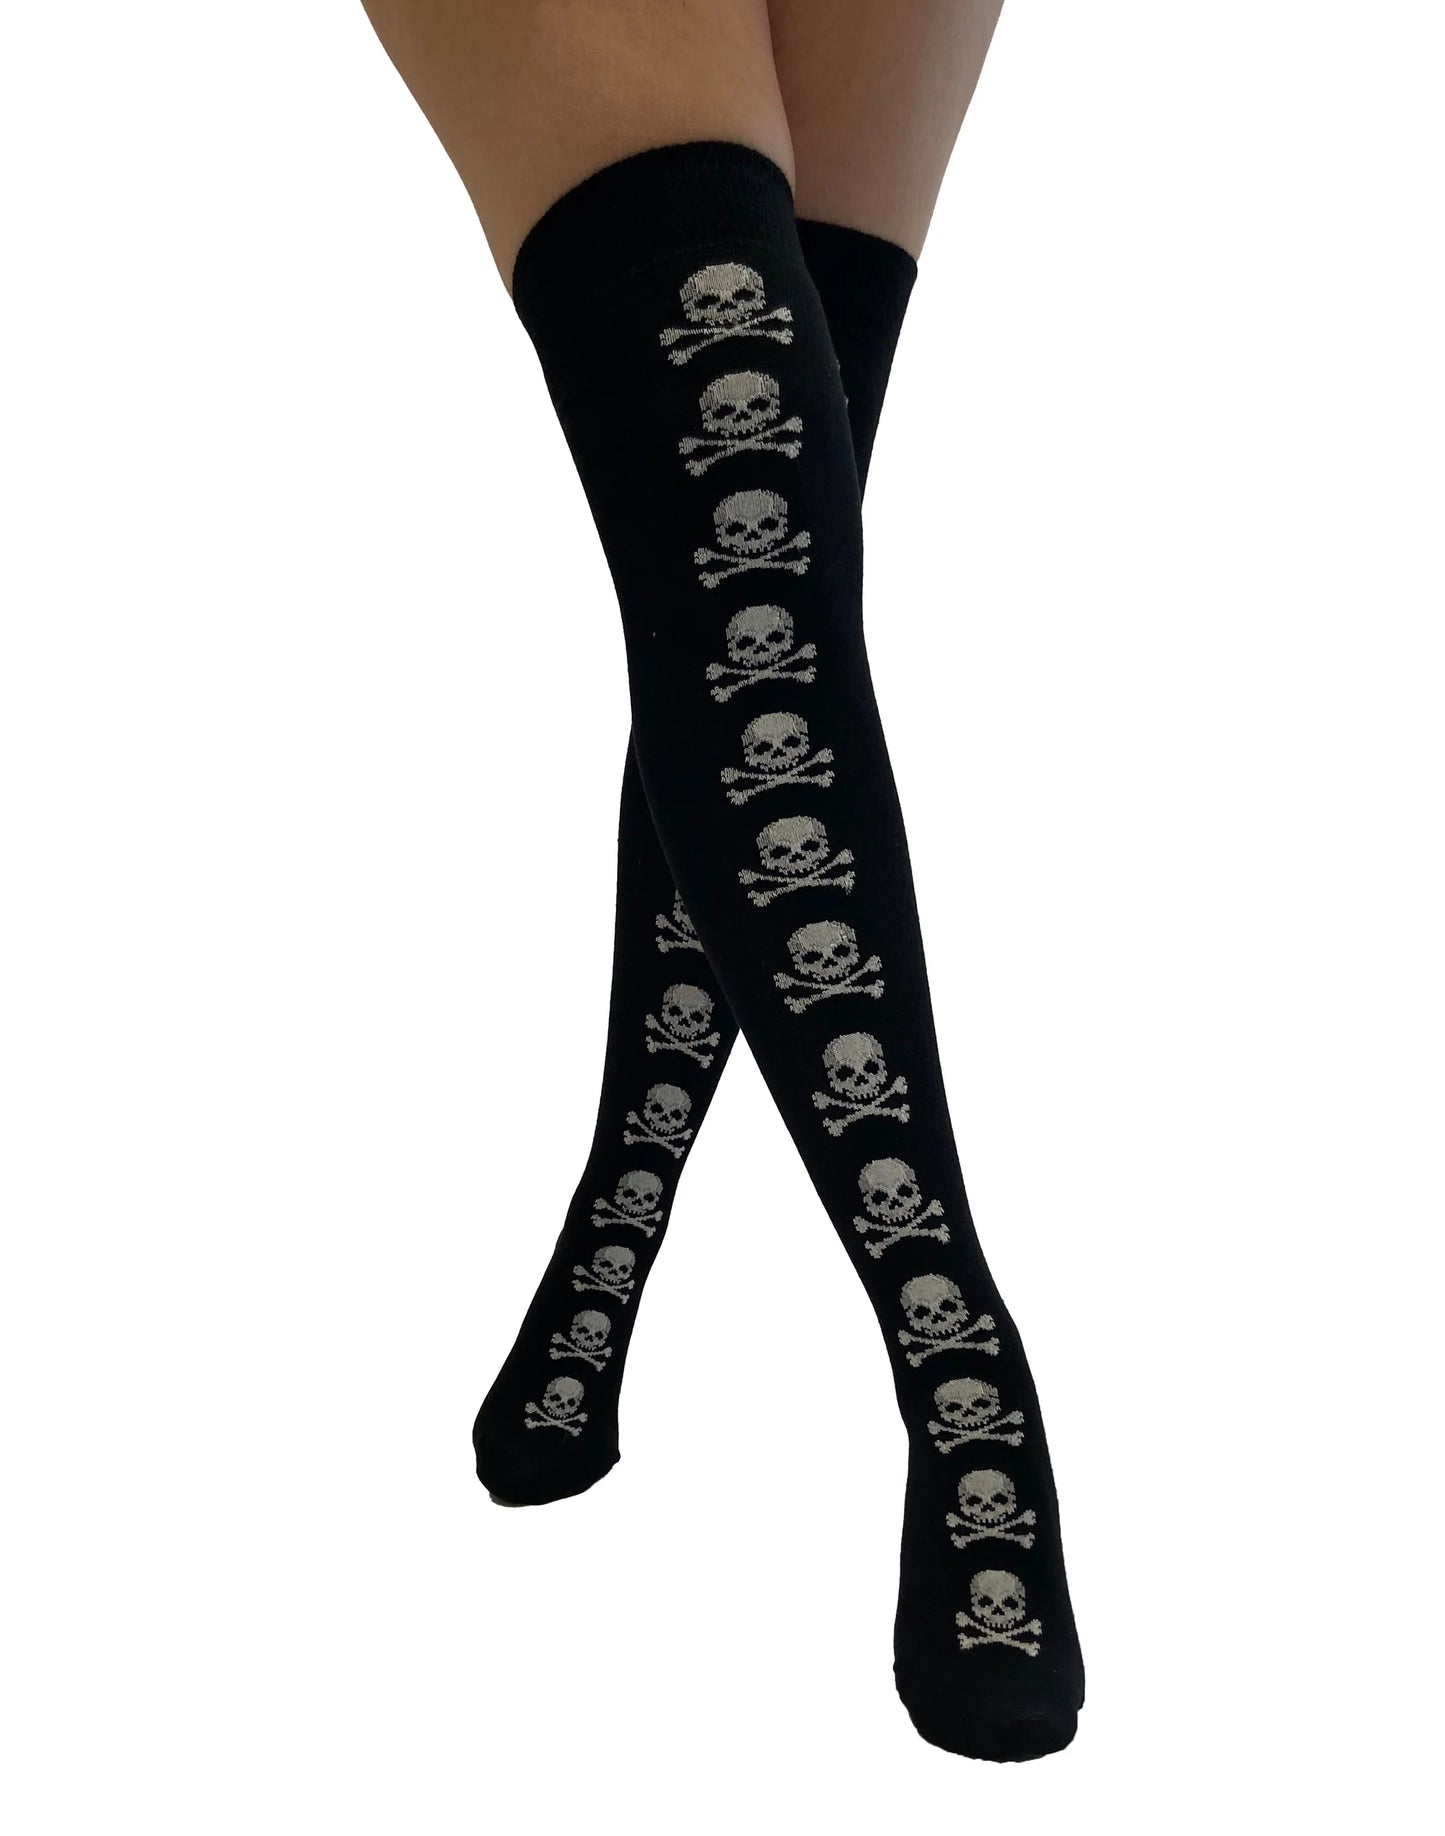 Pamela Mann Skull & Crossbones Over-Knee Socks - Black cotton mix over the knee long socks with white pirate skull and cross-bones stripe going down the front of the leg.